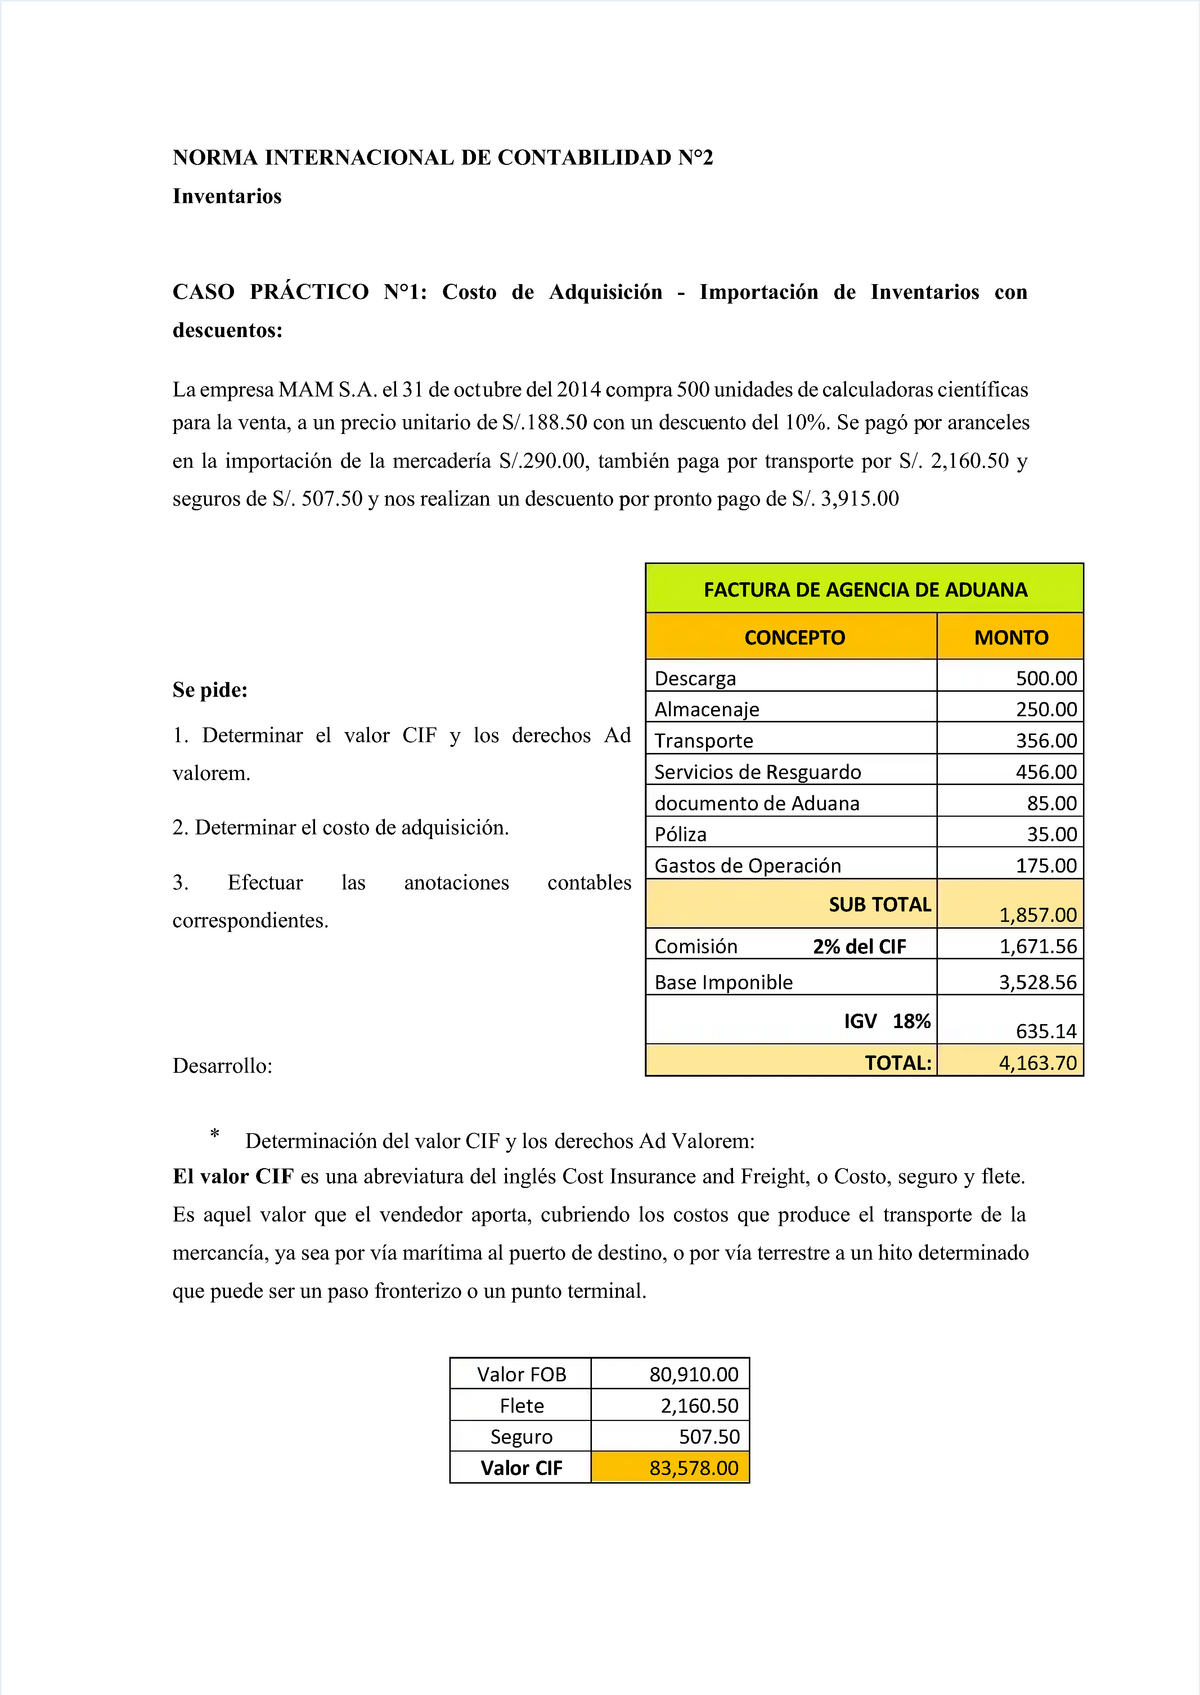 Pdf Nic 2 Compress Casos Practicos De La Nic 2 Norma Internacional De Contabilidad N°2norma 8777